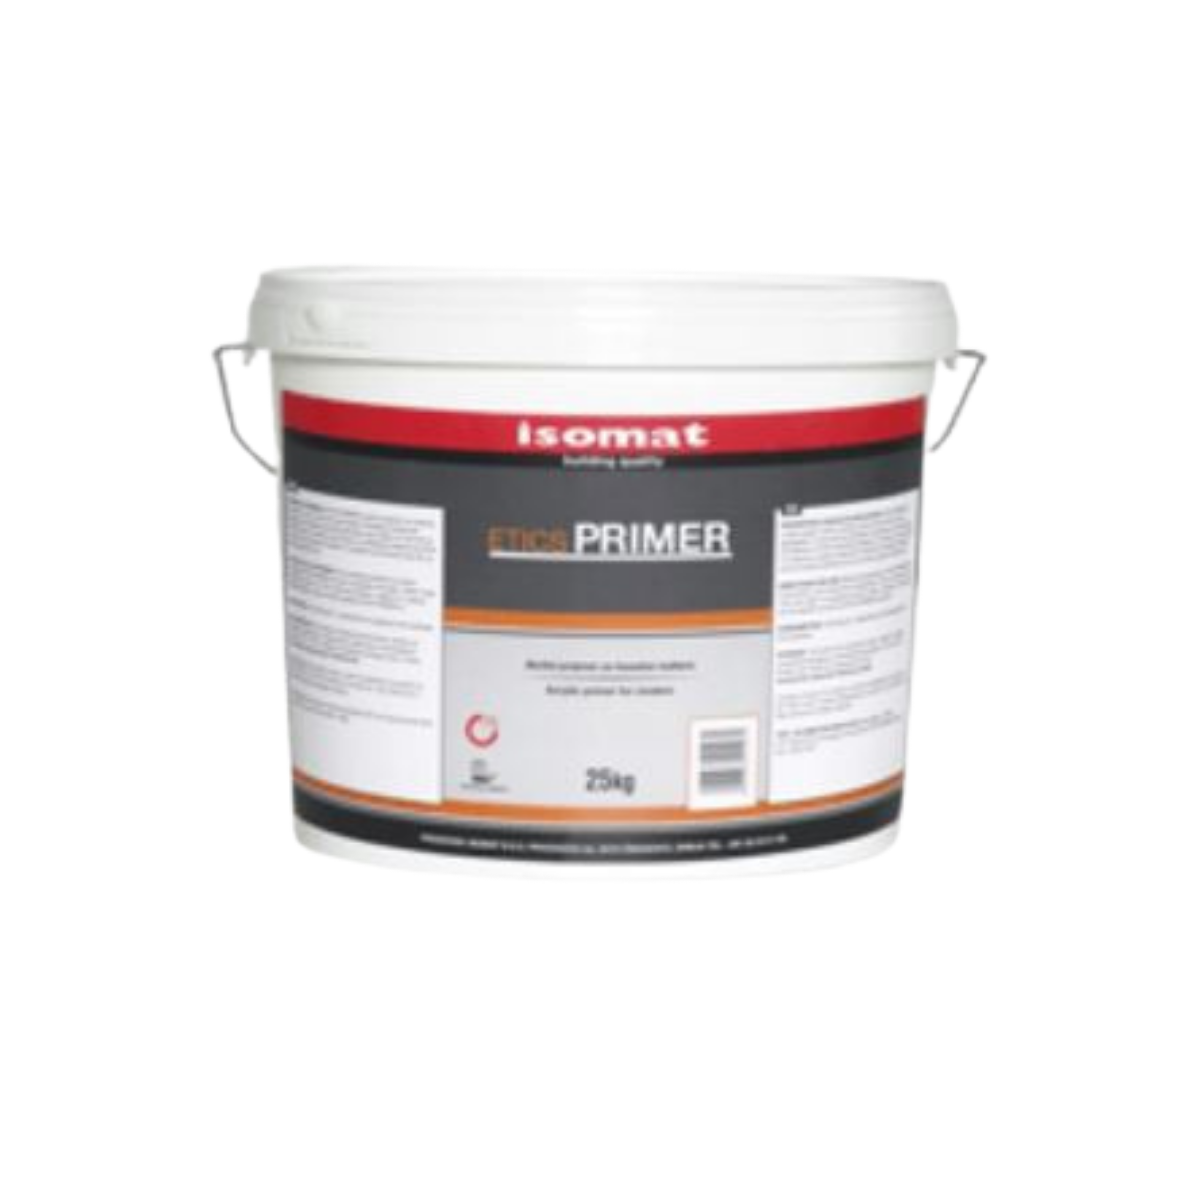 Primers for plastering - Acrylic primer Isomat Etics-Primer adhesion for plastering 094-6 25KG, https:maxbau.ro